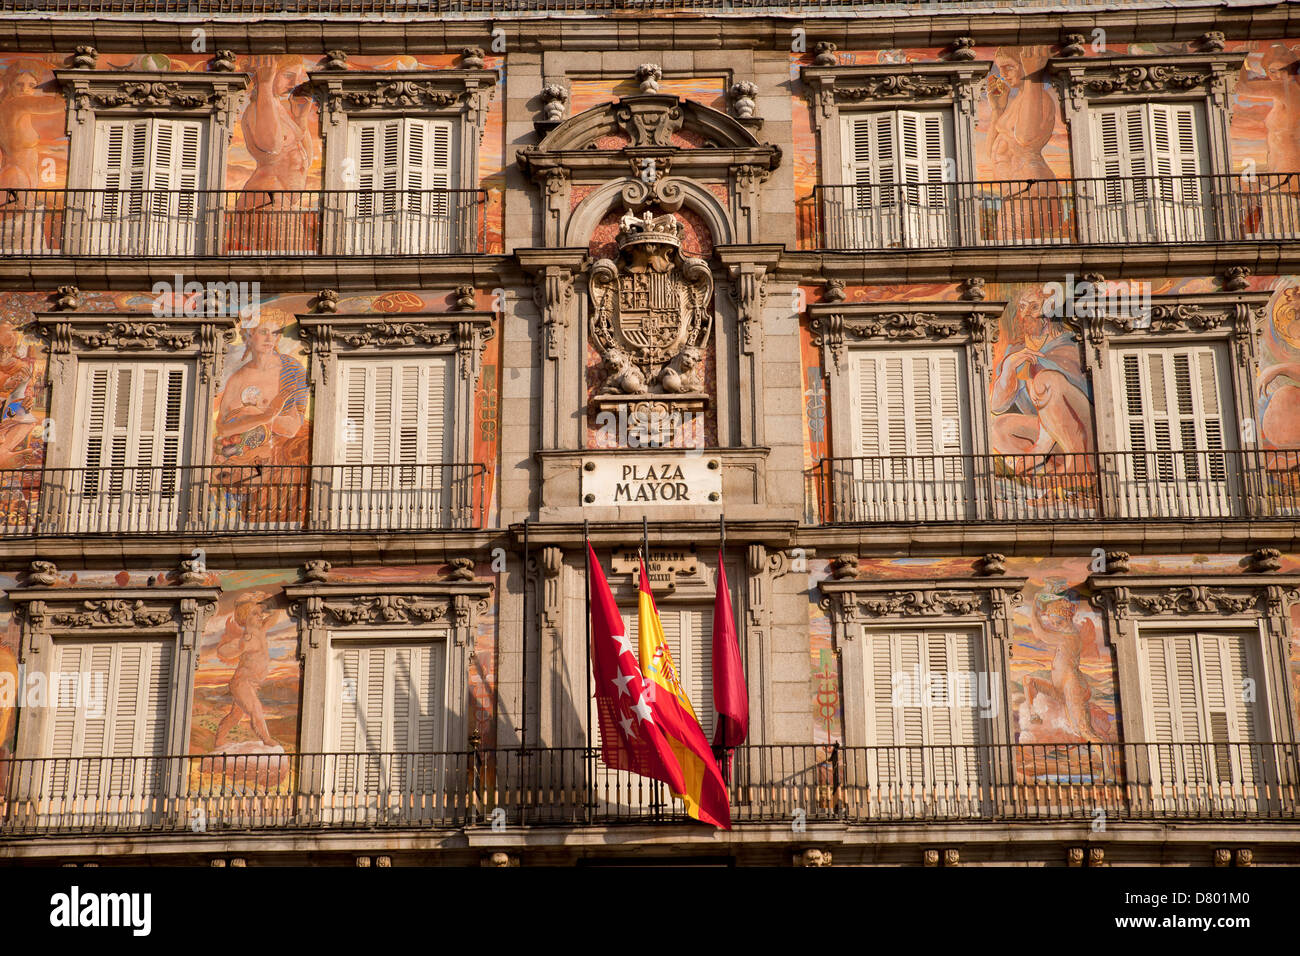 Façades colorées et des balcons sur la place centrale Plaza Mayor, Madrid, Spain, Europe Banque D'Images